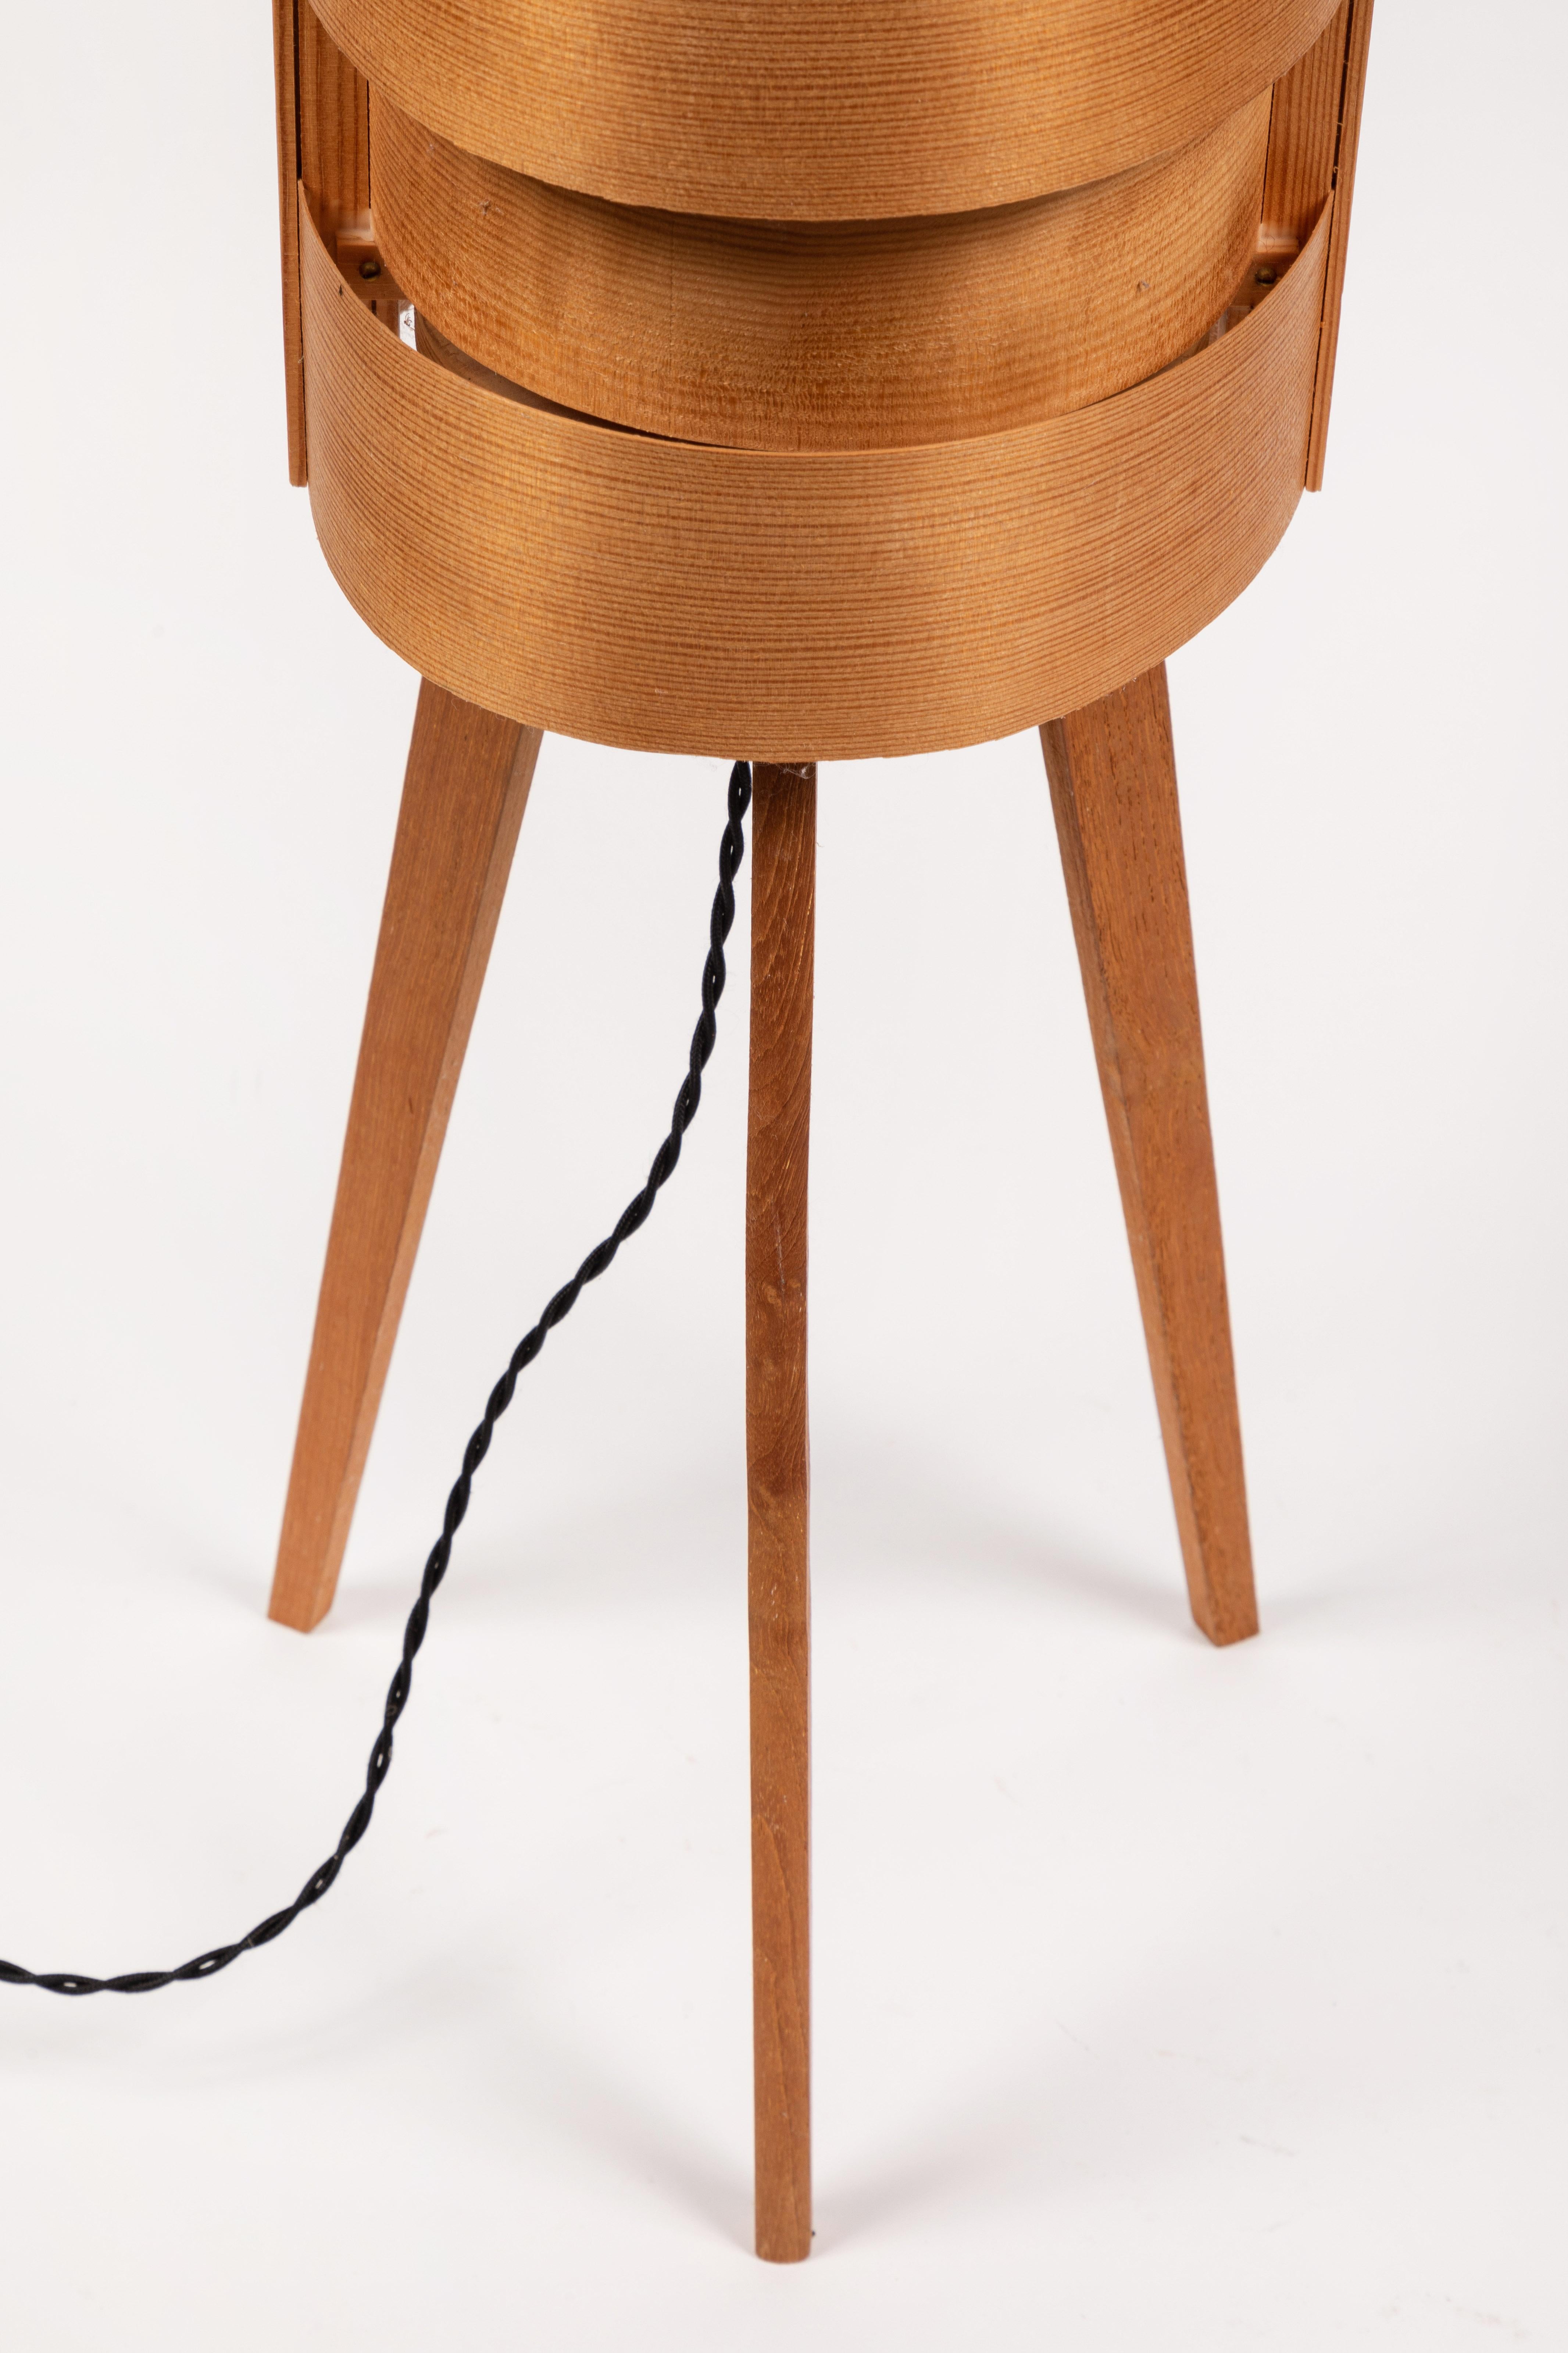 1960s Hans-Agne Jakobsson Wood Tripod Floor Lamp for AB Ellysett For Sale 6